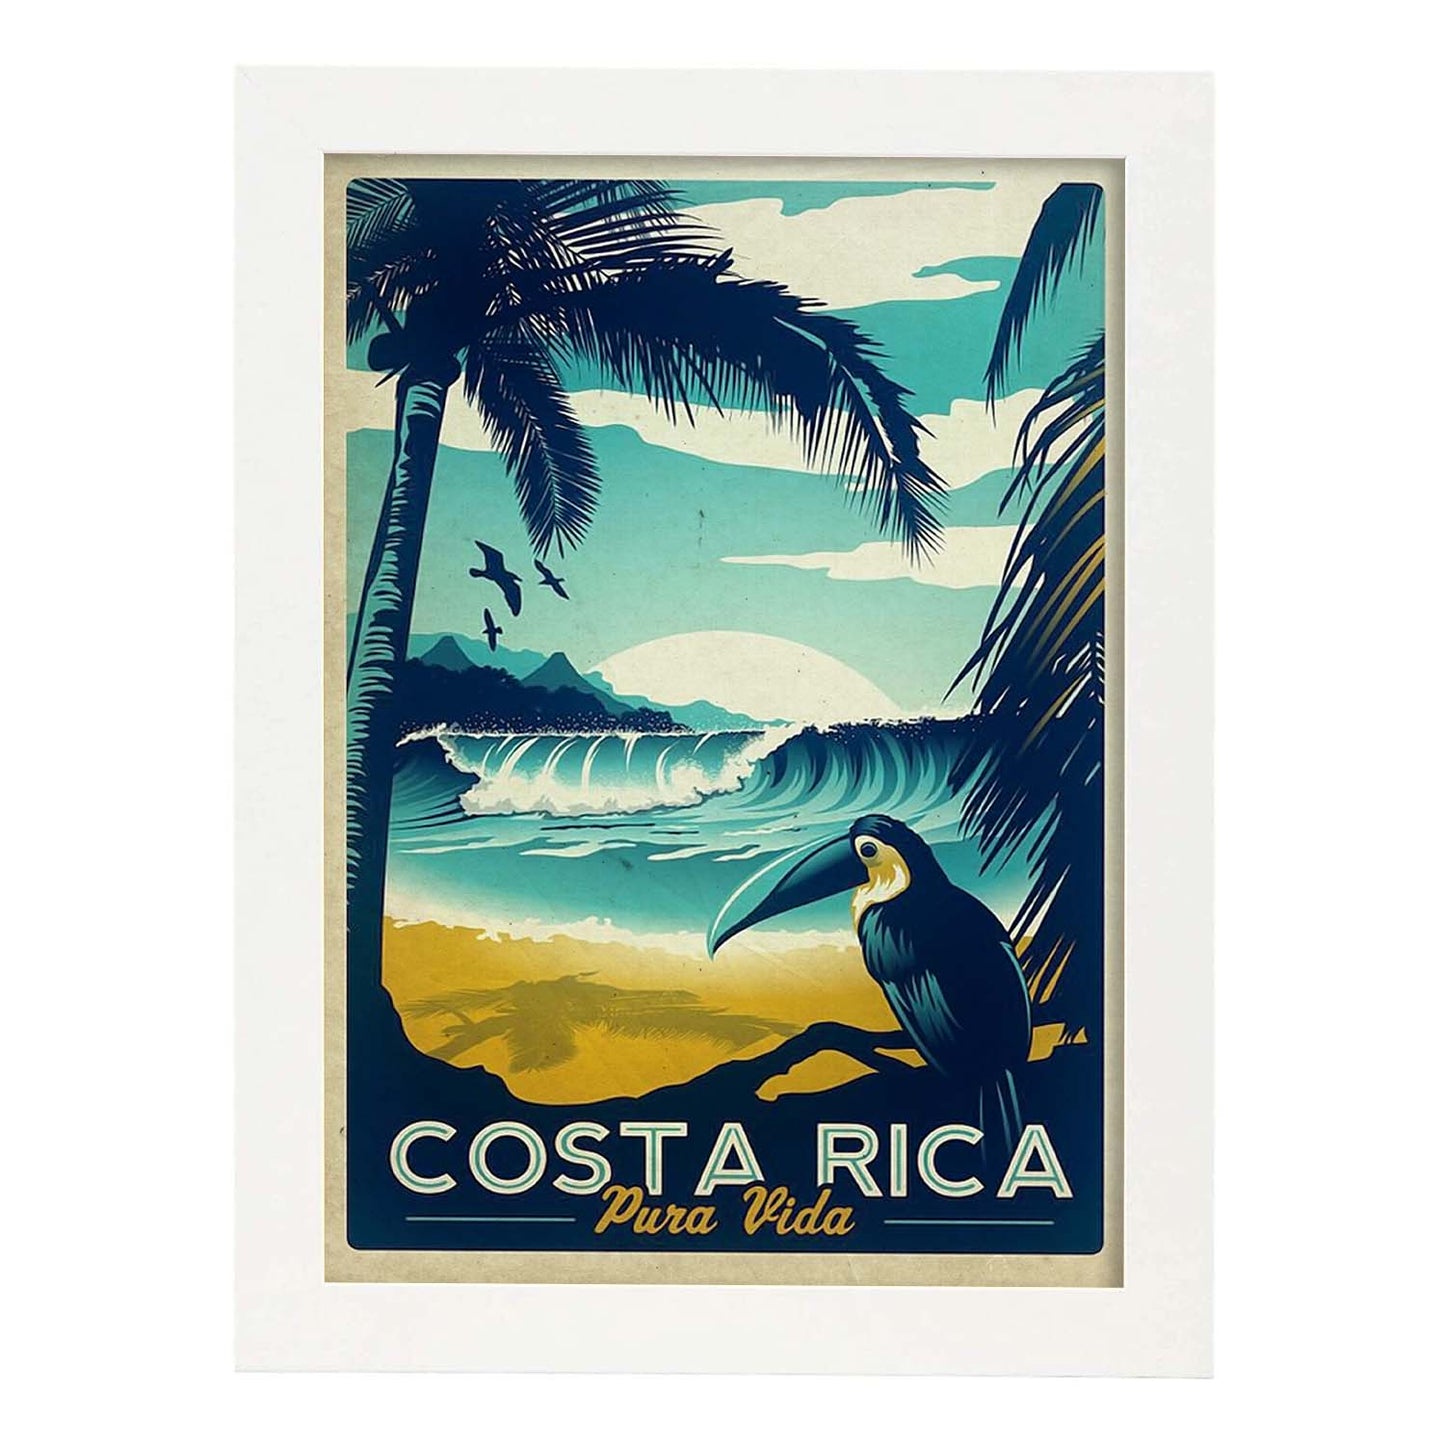 Poster vintage de Costa rica. con imágenes vintage y de publicidad antigua.-Artwork-Nacnic-A3-Marco Blanco-Nacnic Estudio SL